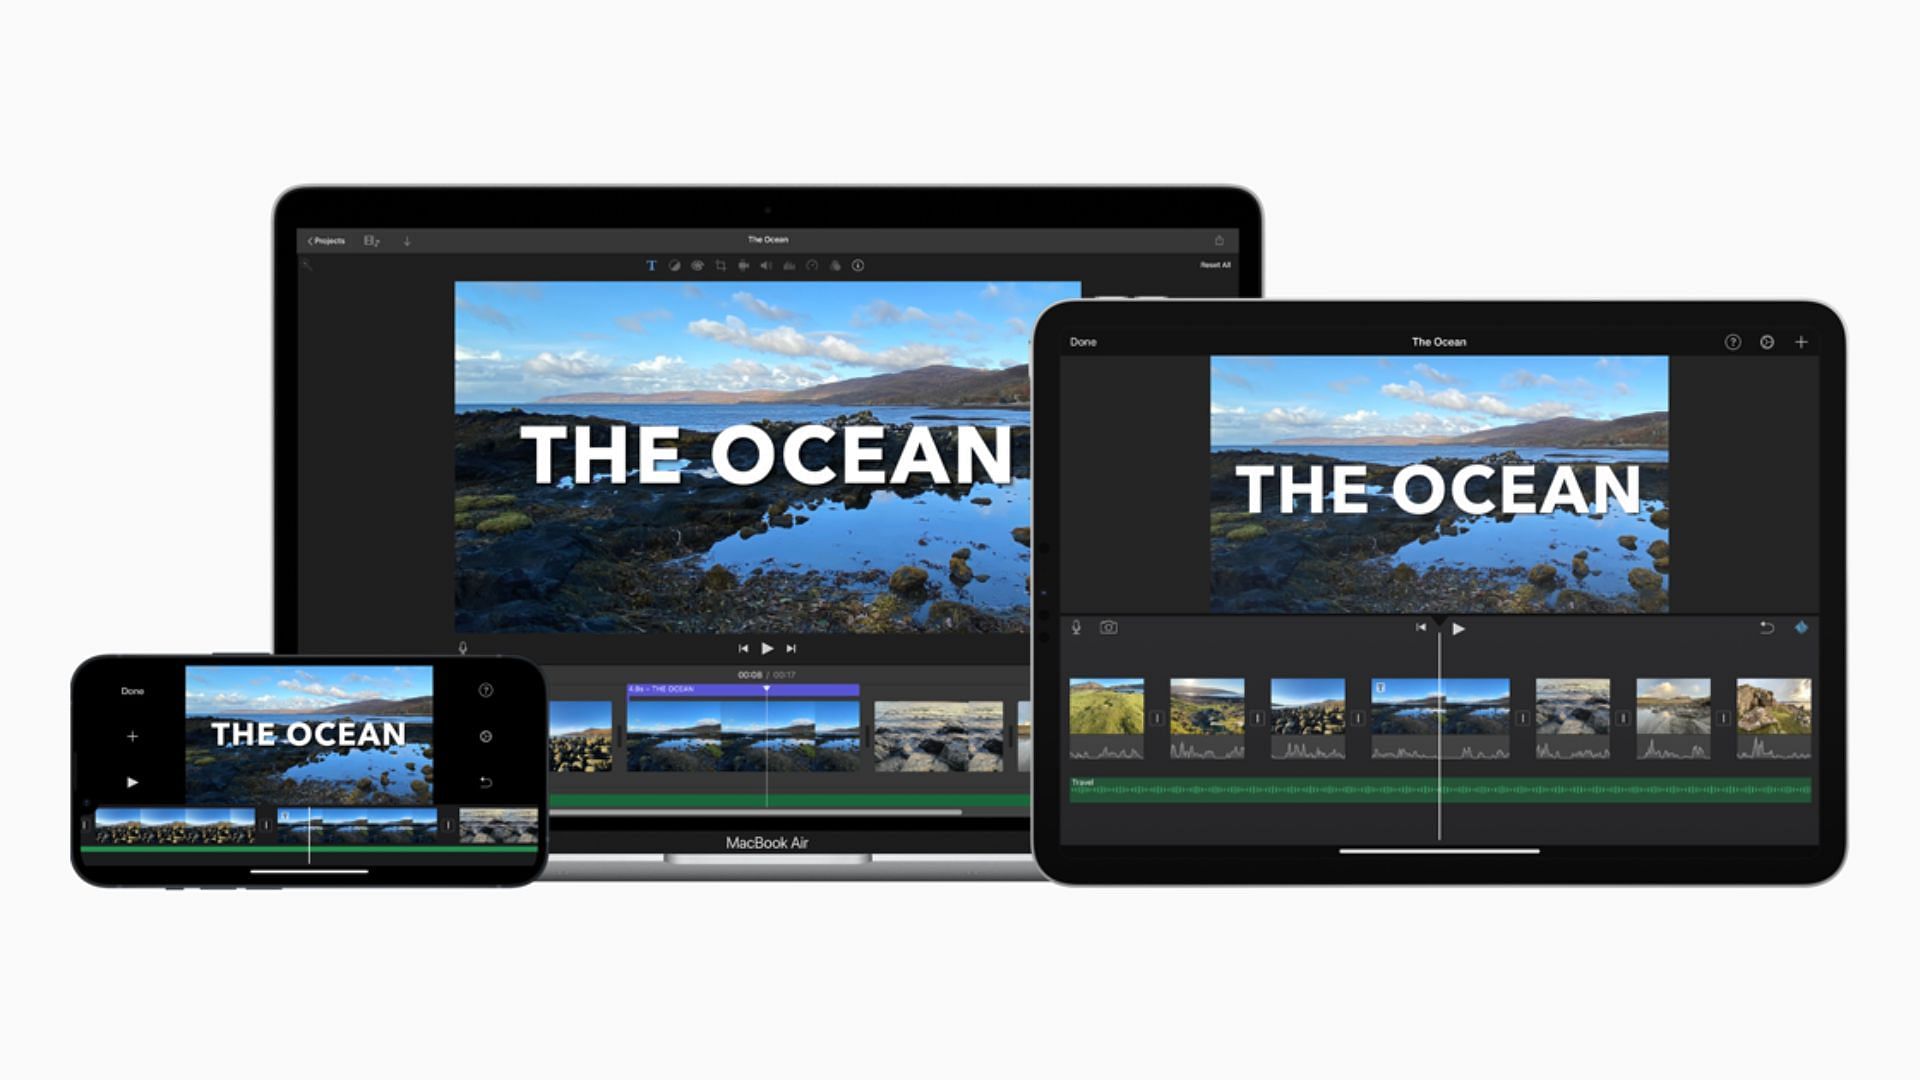 Apple iMovie is one of the most used video editors (Image via Apple)